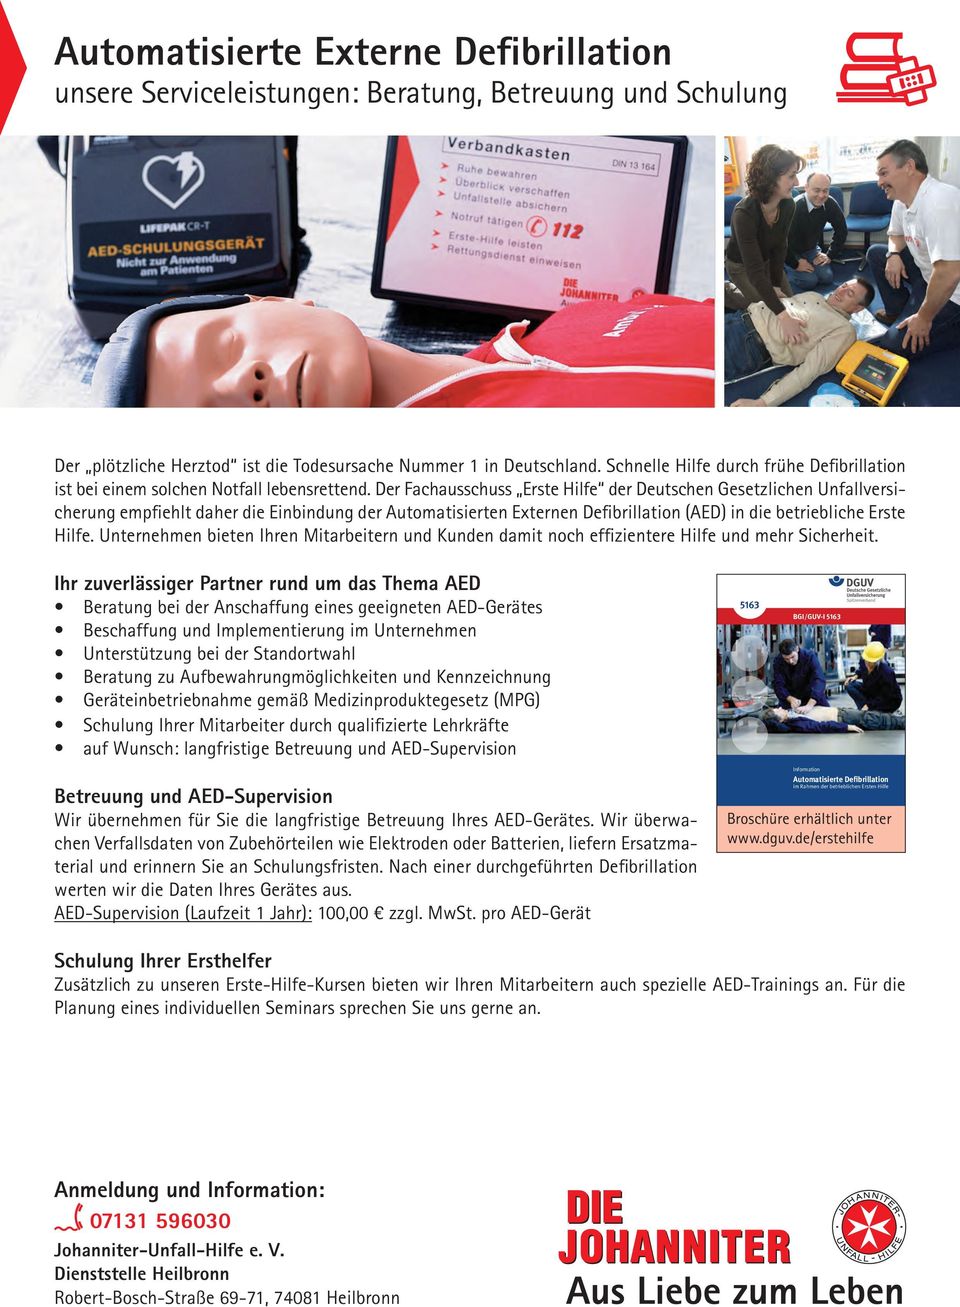 Der Fachausschuss Erste Hilfe der Deutschen Gesetzlichen Unfallversicherung empfiehlt daher die Einbindung der Automatisierten Externen Defibrillation (AED) in die betriebliche Erste Hilfe.